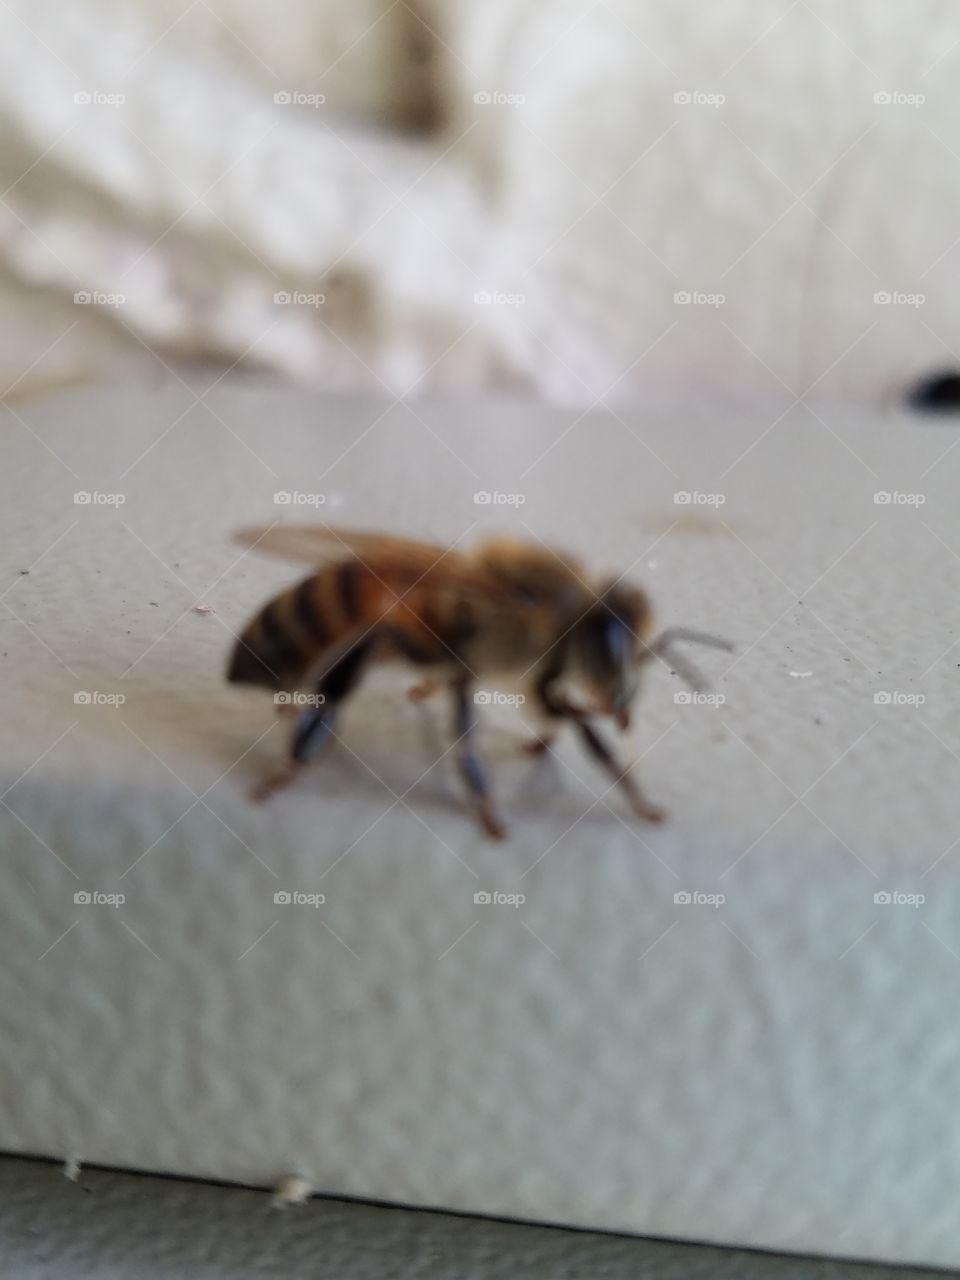 Sleepy honey bee